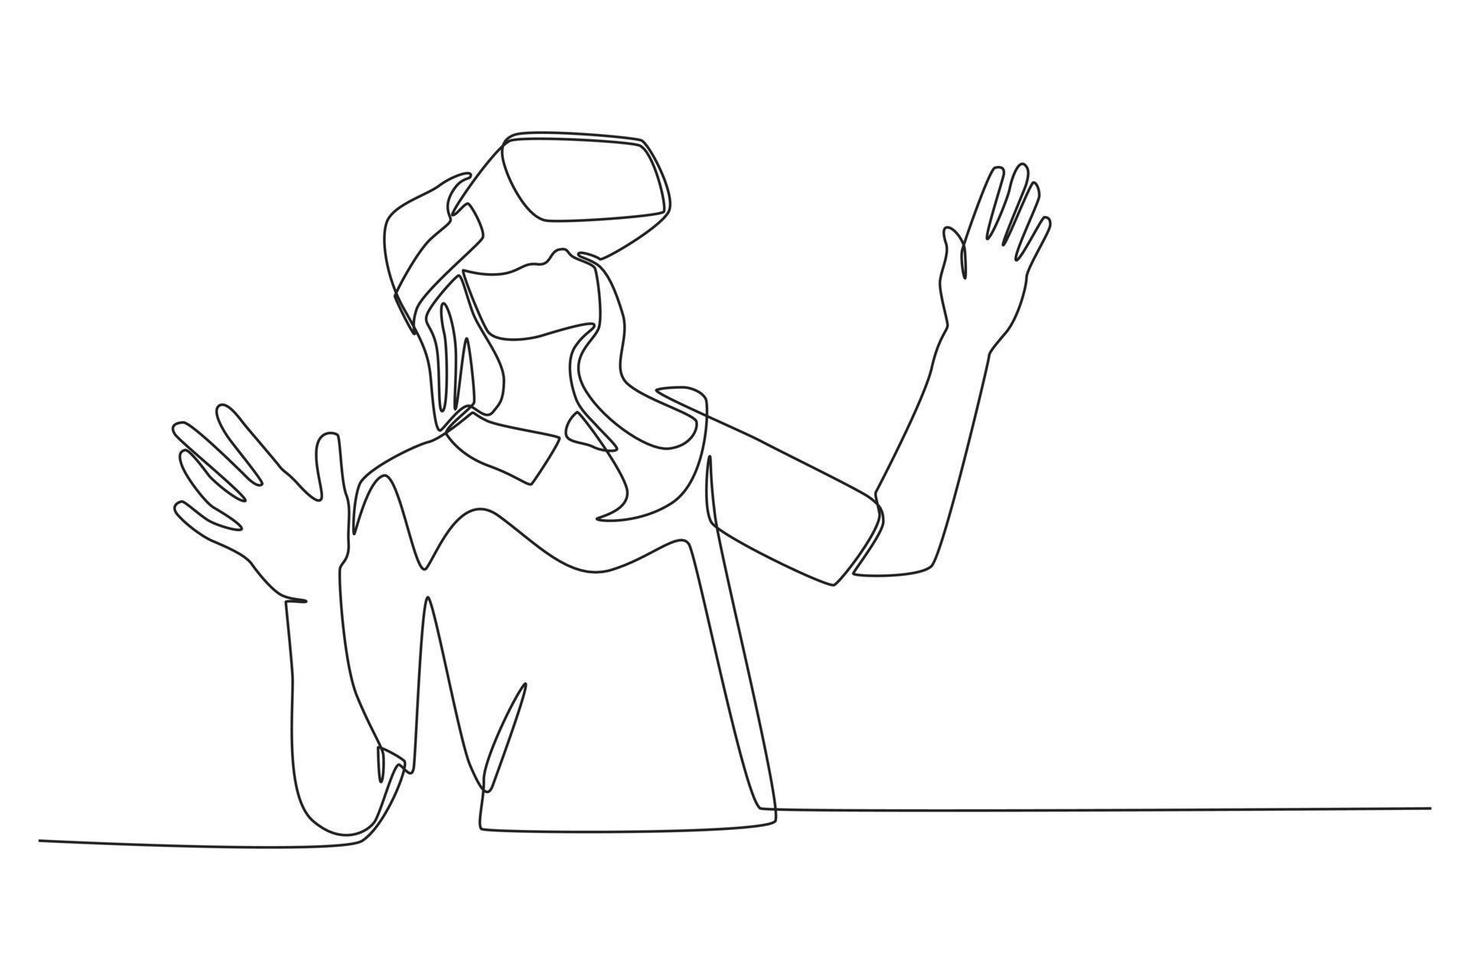 een doorlopende lijntekening van een jong meisje in een bril van virtual reality. virtueel spelconcept. enkele lijn tekenen ontwerp vector grafische afbeelding.